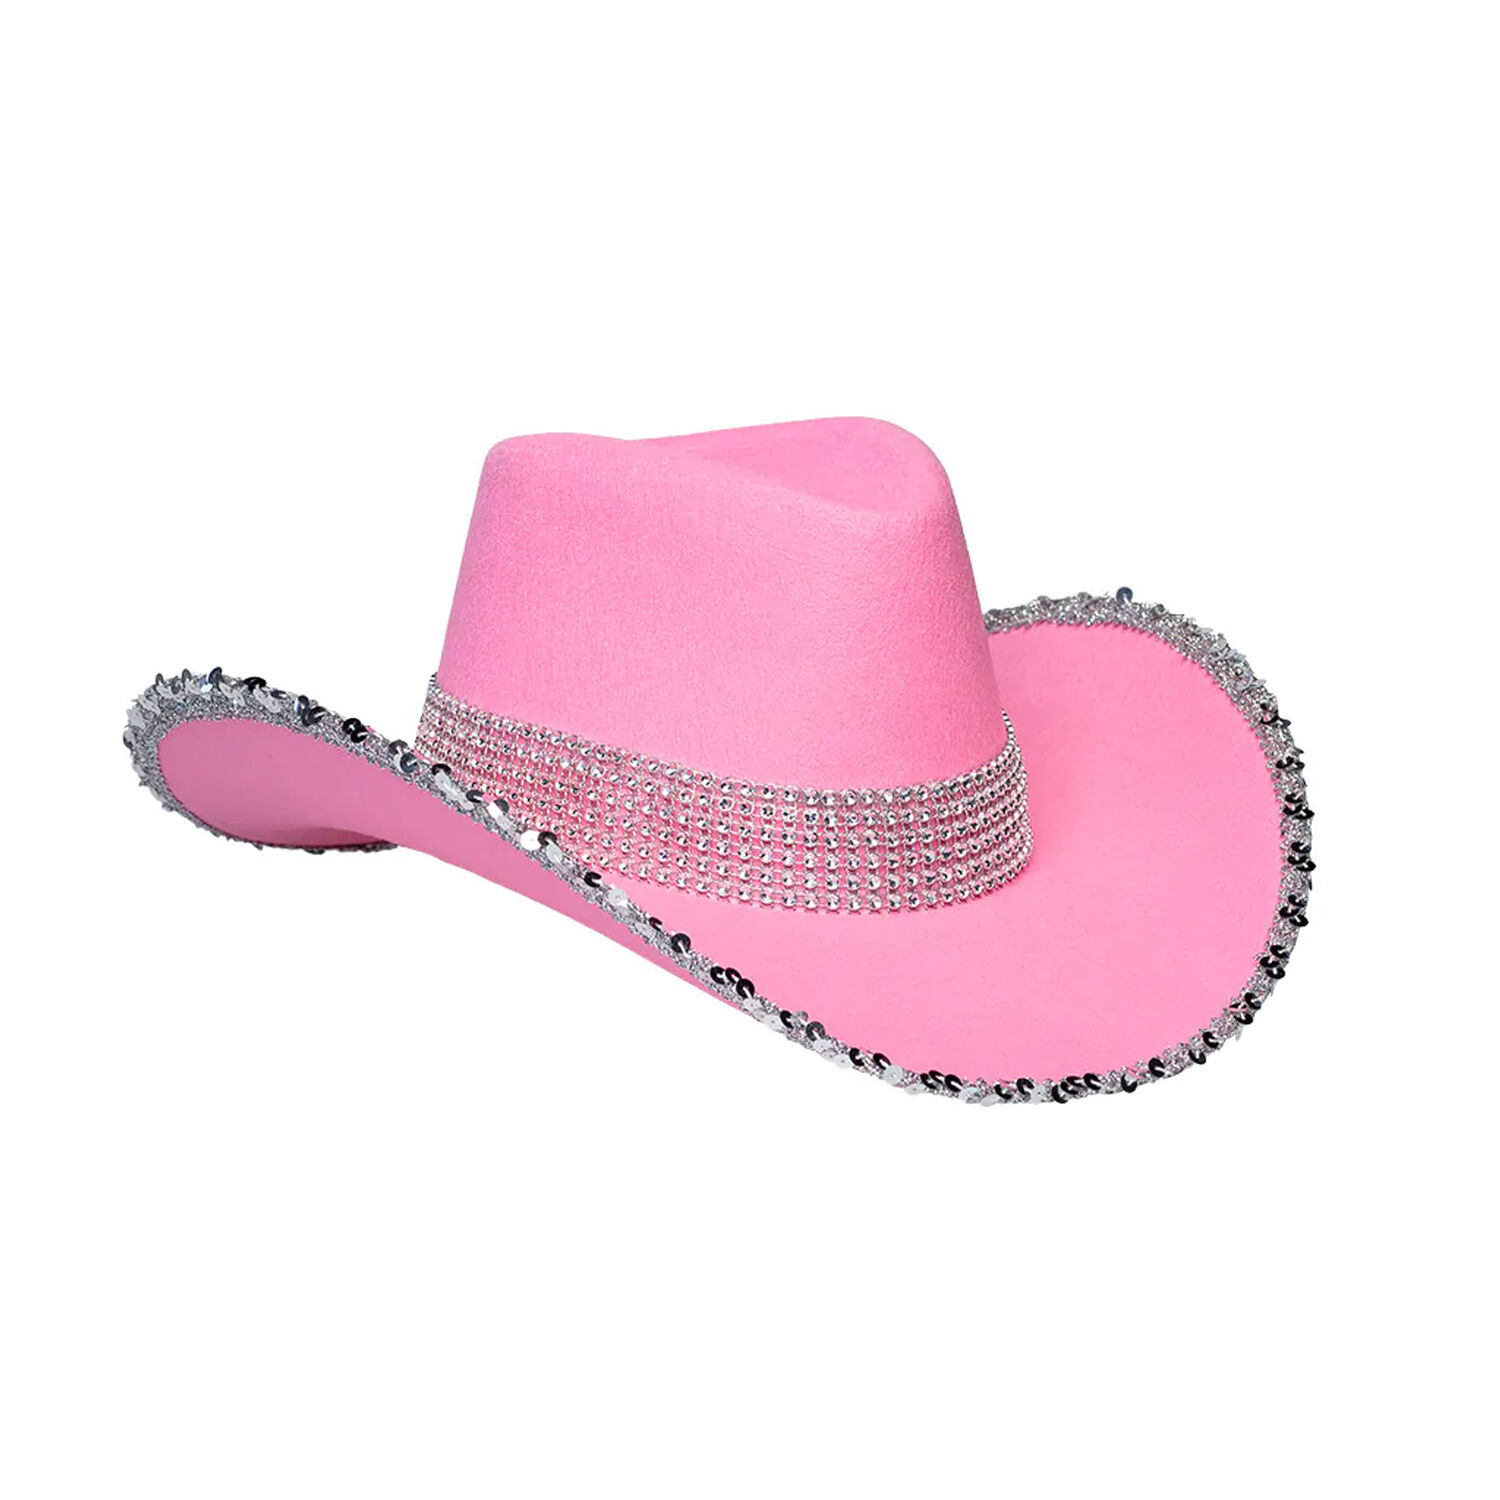 Nocapam Neuartiger rosa Cowboyhut - Neuheit Preppy Pink Cowgirl Hut mit  herzförmiger Sonnenbrille - Hautfreundlicher Cowboyhut für Damen